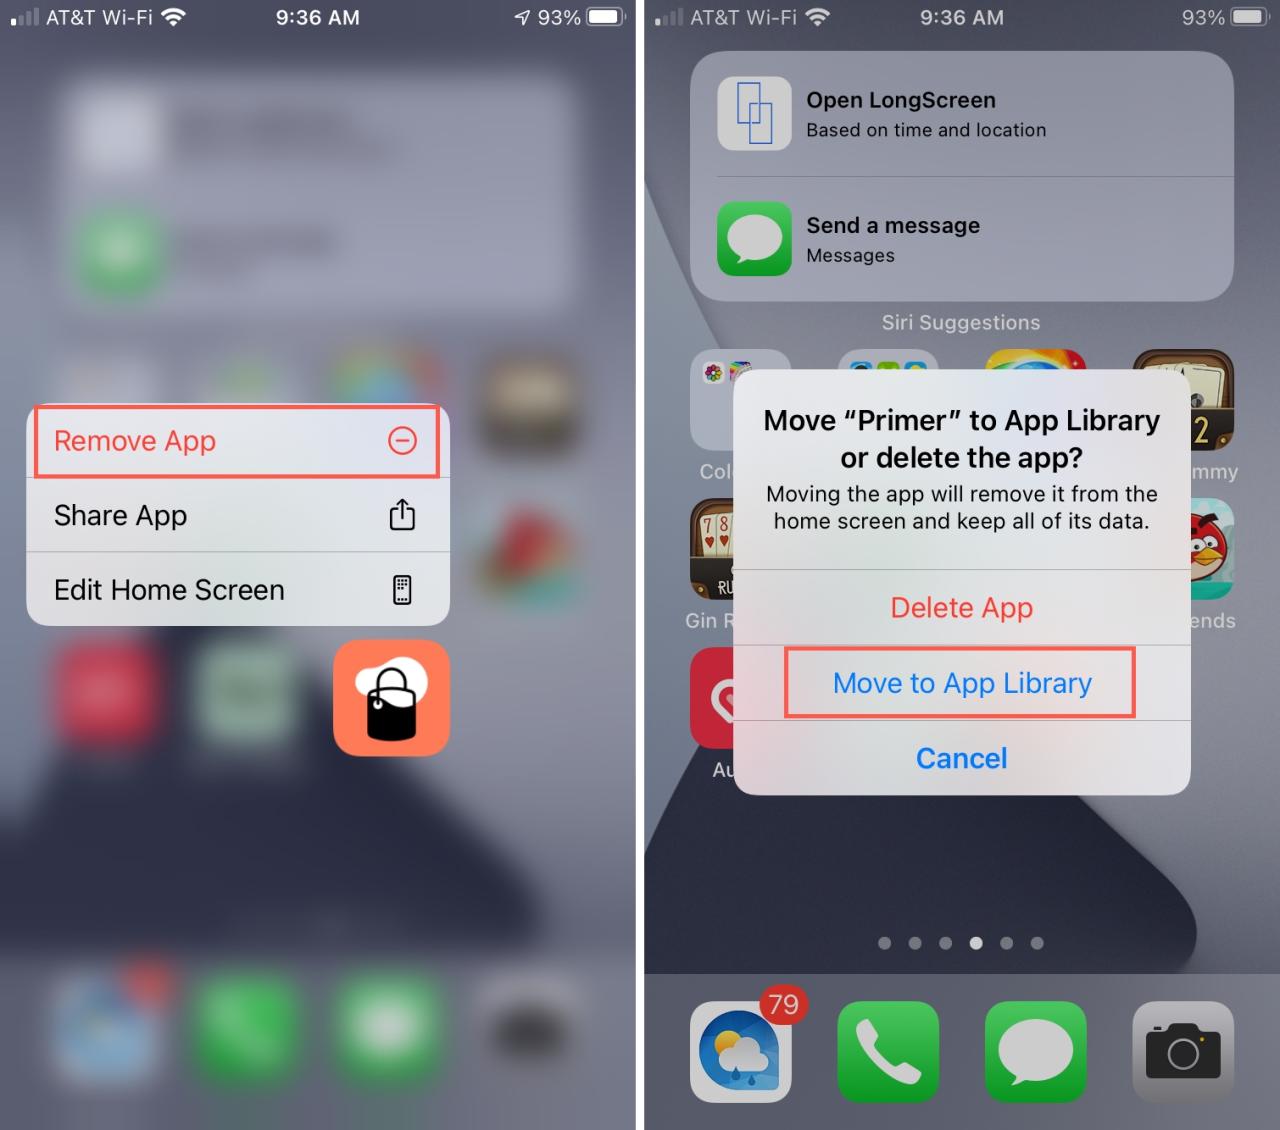 Mover la aplicación a la biblioteca de aplicaciones en el iPhone